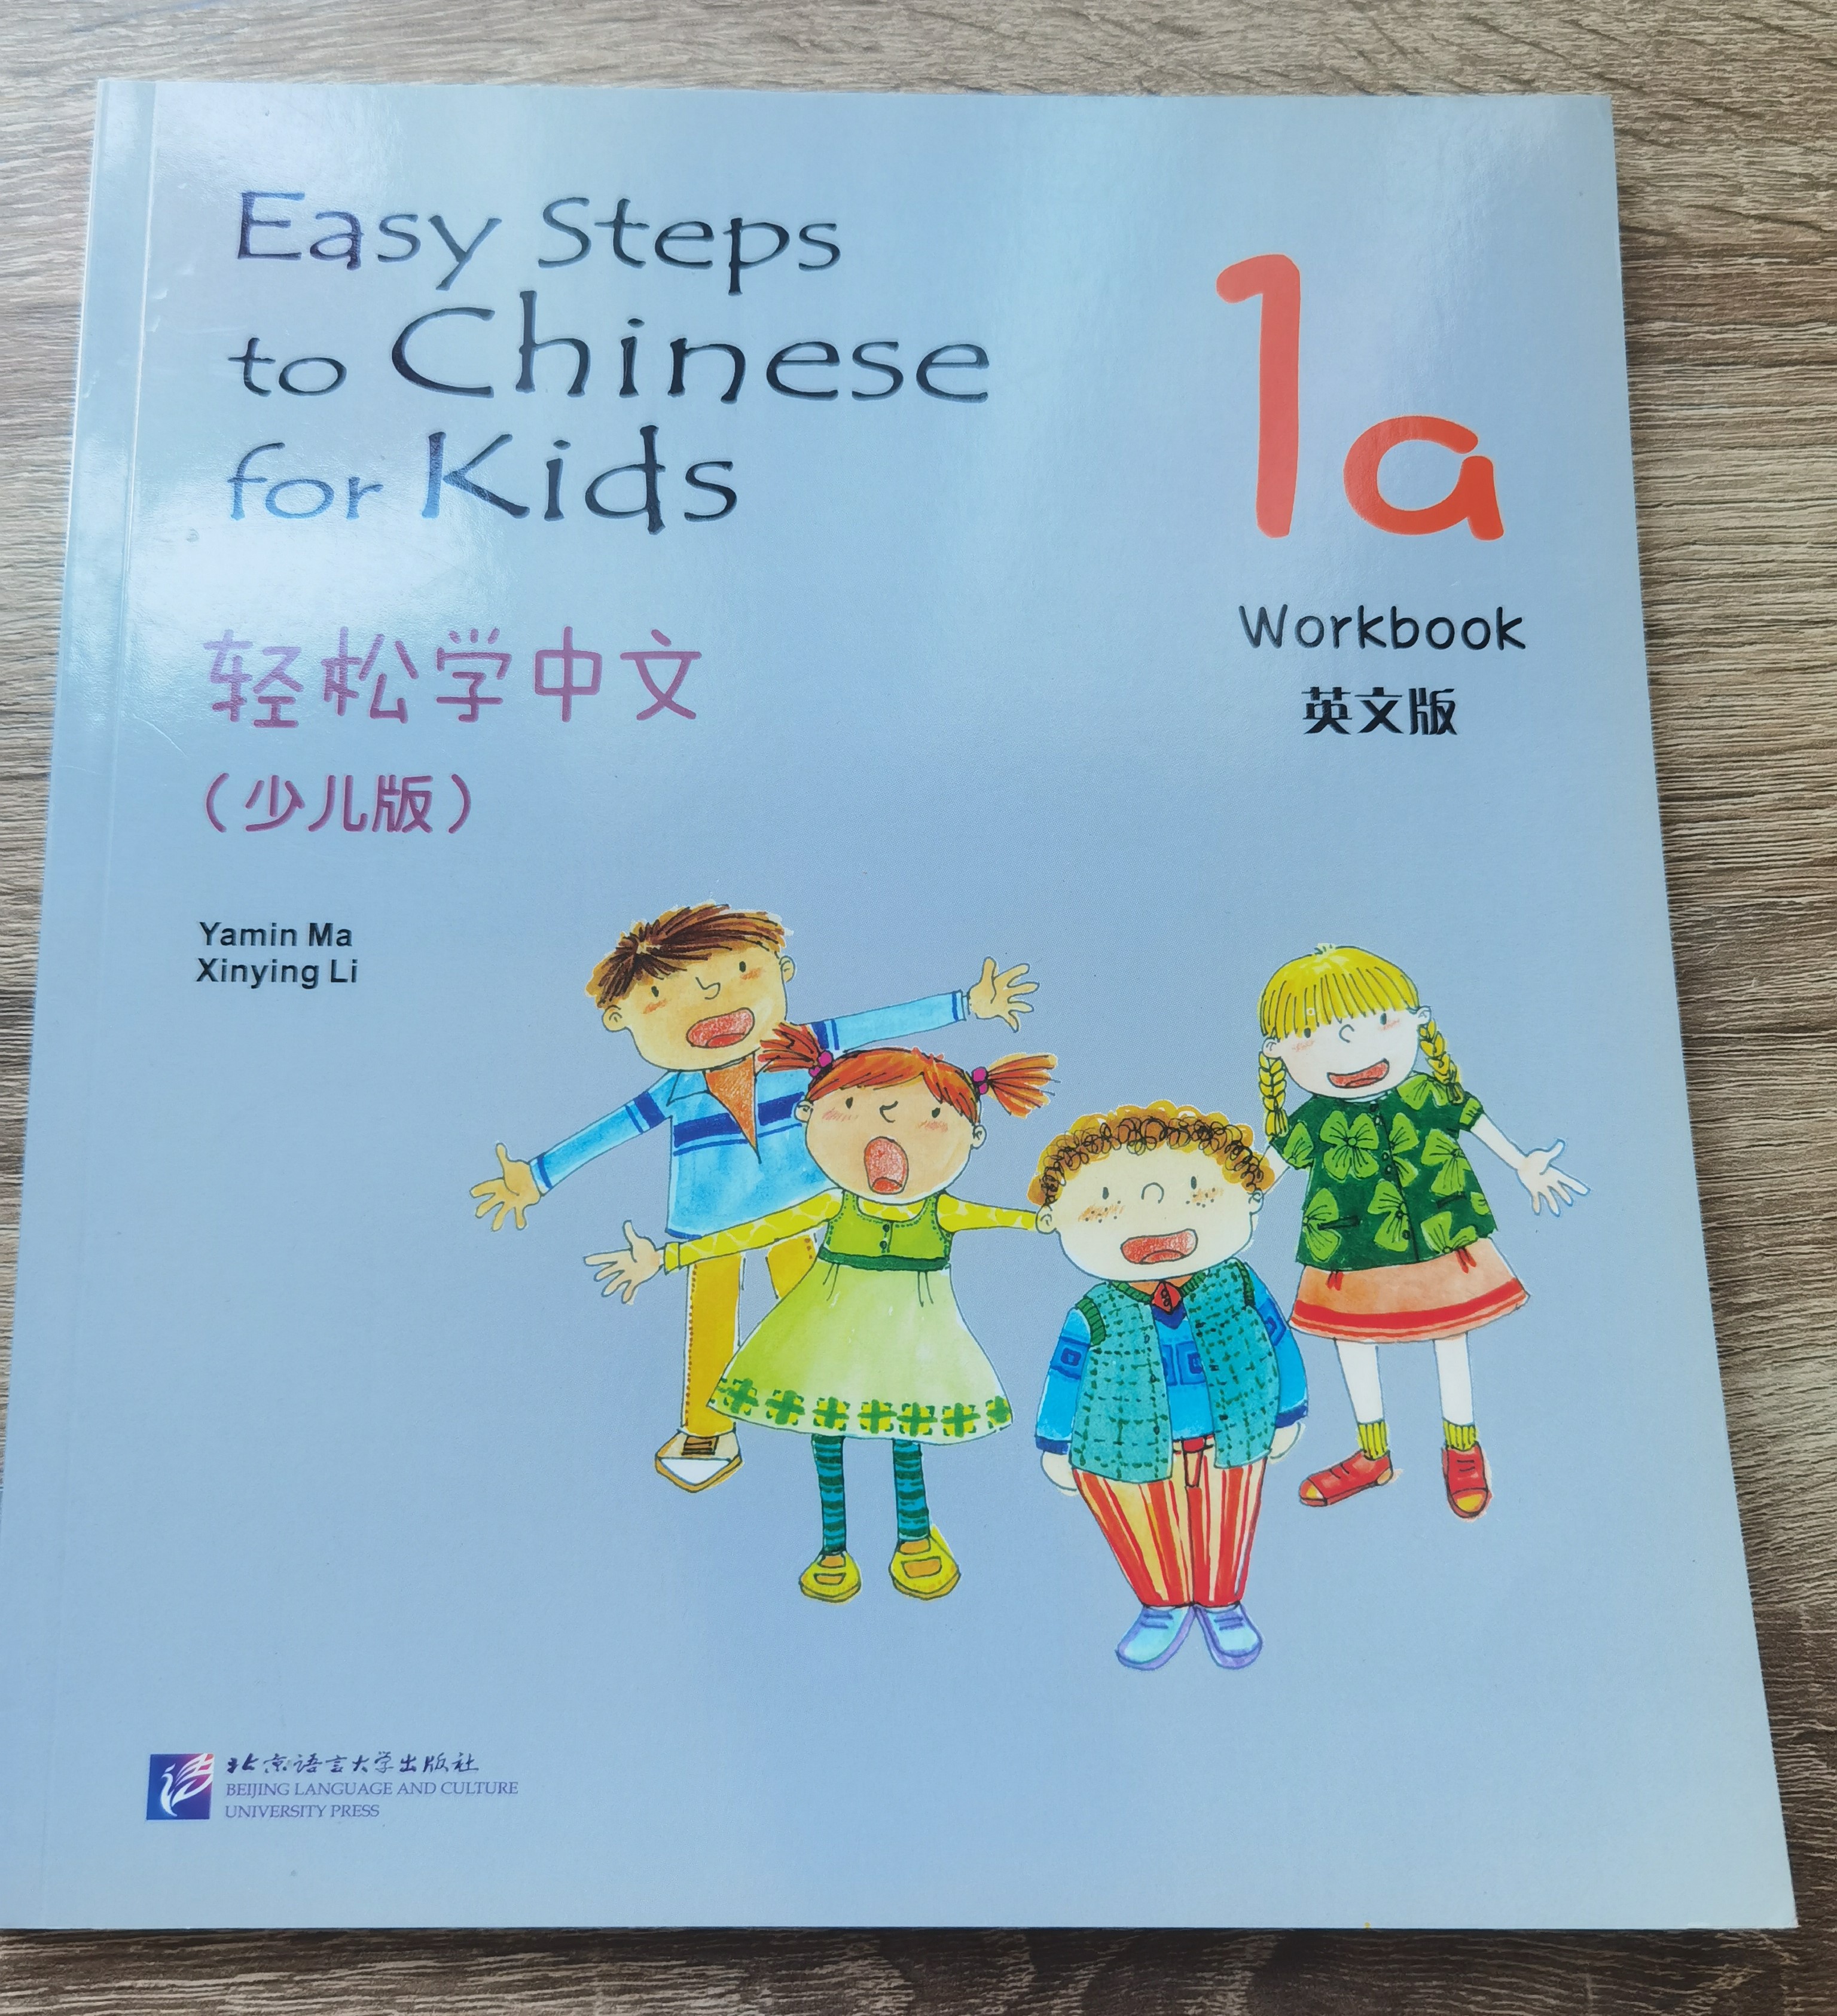 หนังสือเรียนภาษาจีนสำหรับเด็ก easy steps to chinese for kids 1a (เล่ม1) เล่มละ 480 บาท